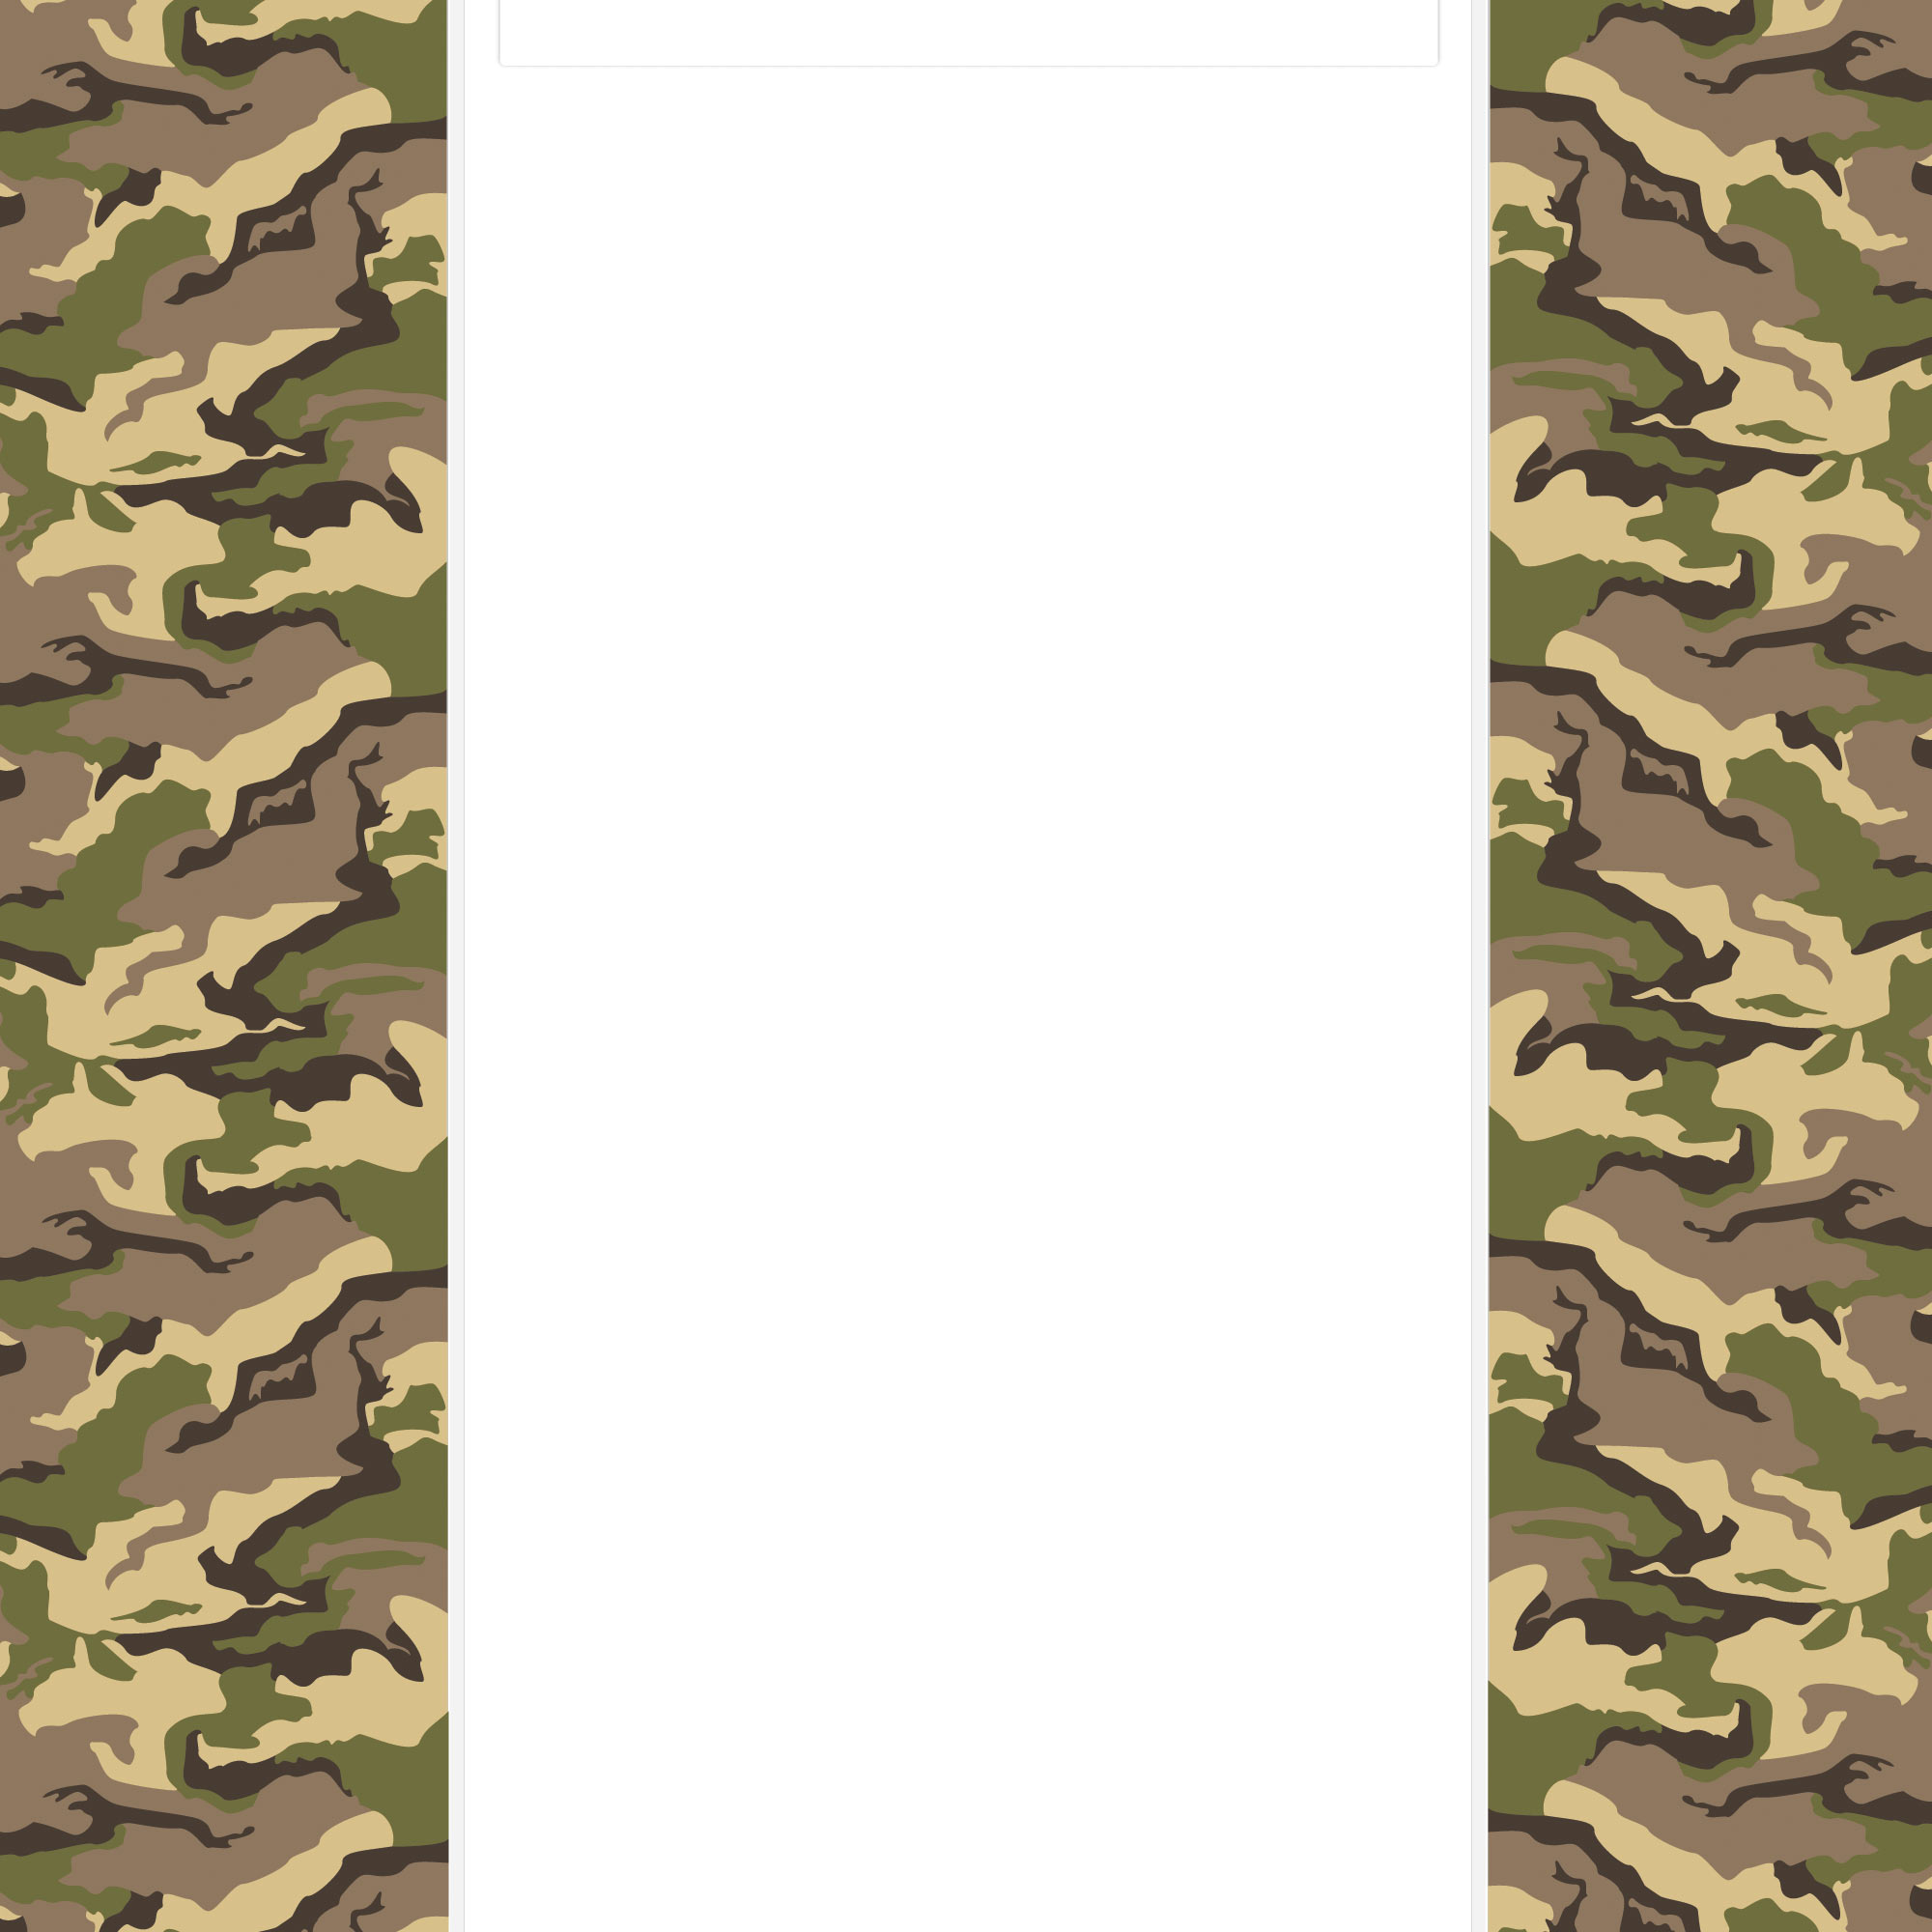 카모 배경 테두리,군사 위장,초록,무늬,위장,디자인